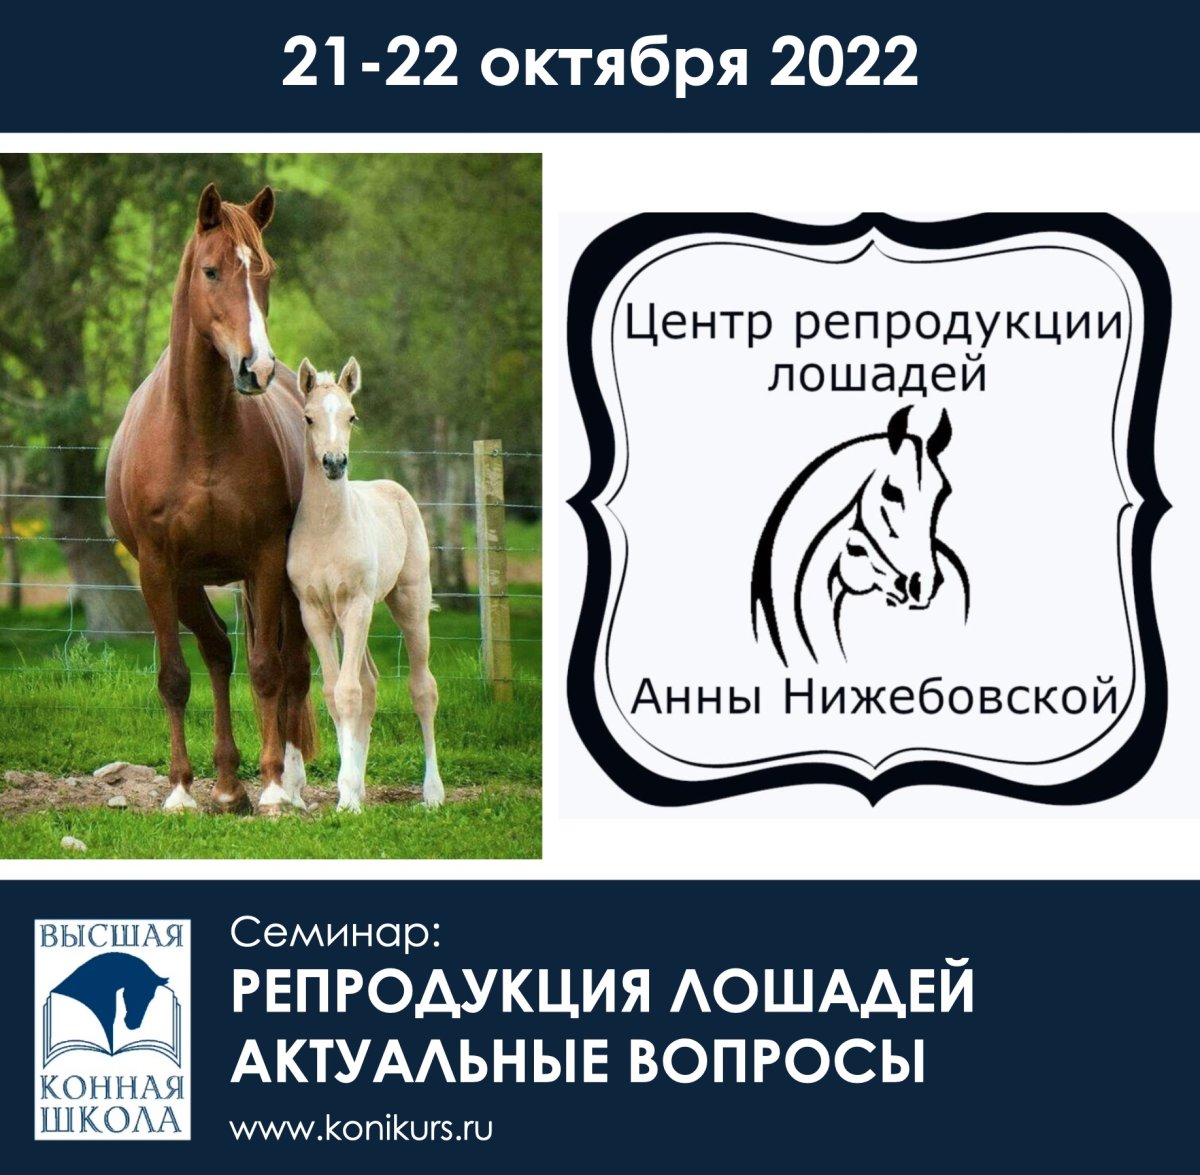 Приглашаем 21-22 октября семинар: "Репродукция лошадей. Актуальные вопросы"!